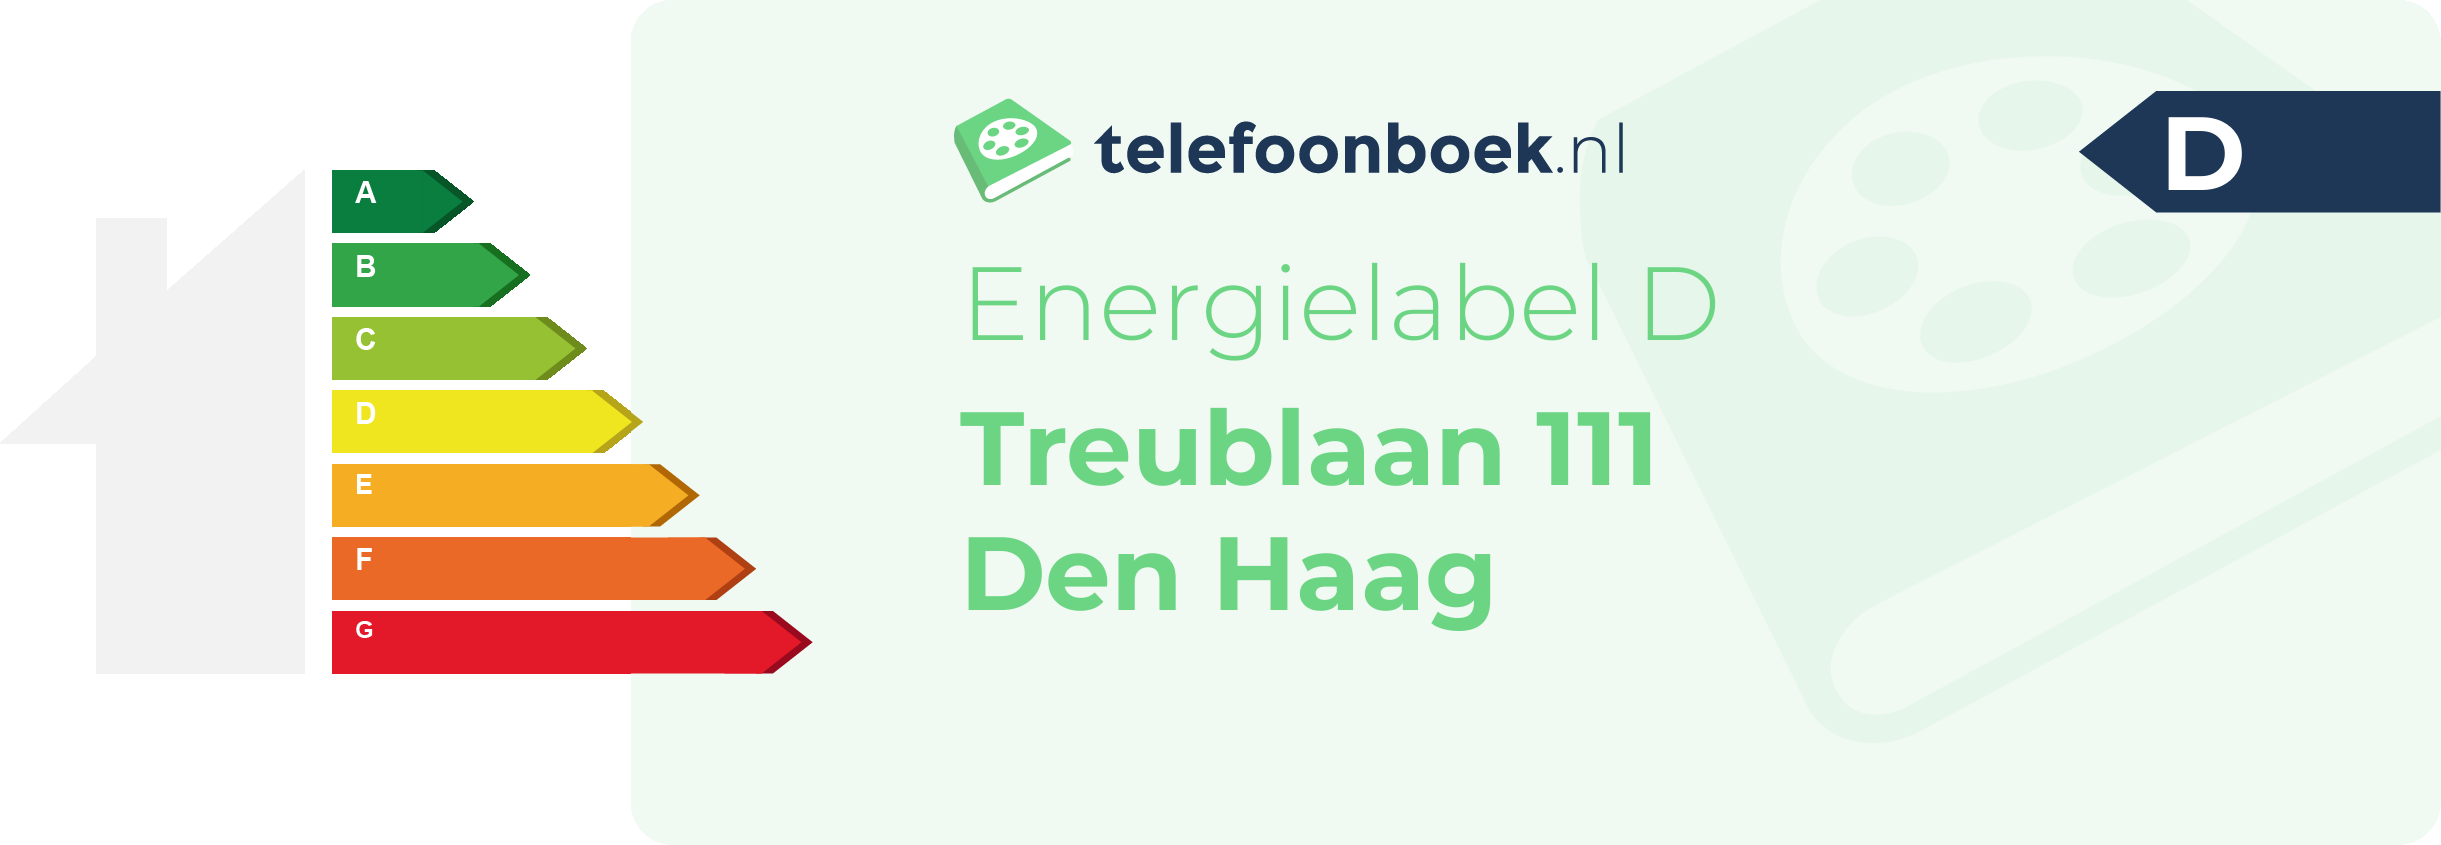 Energielabel Treublaan 111 Den Haag